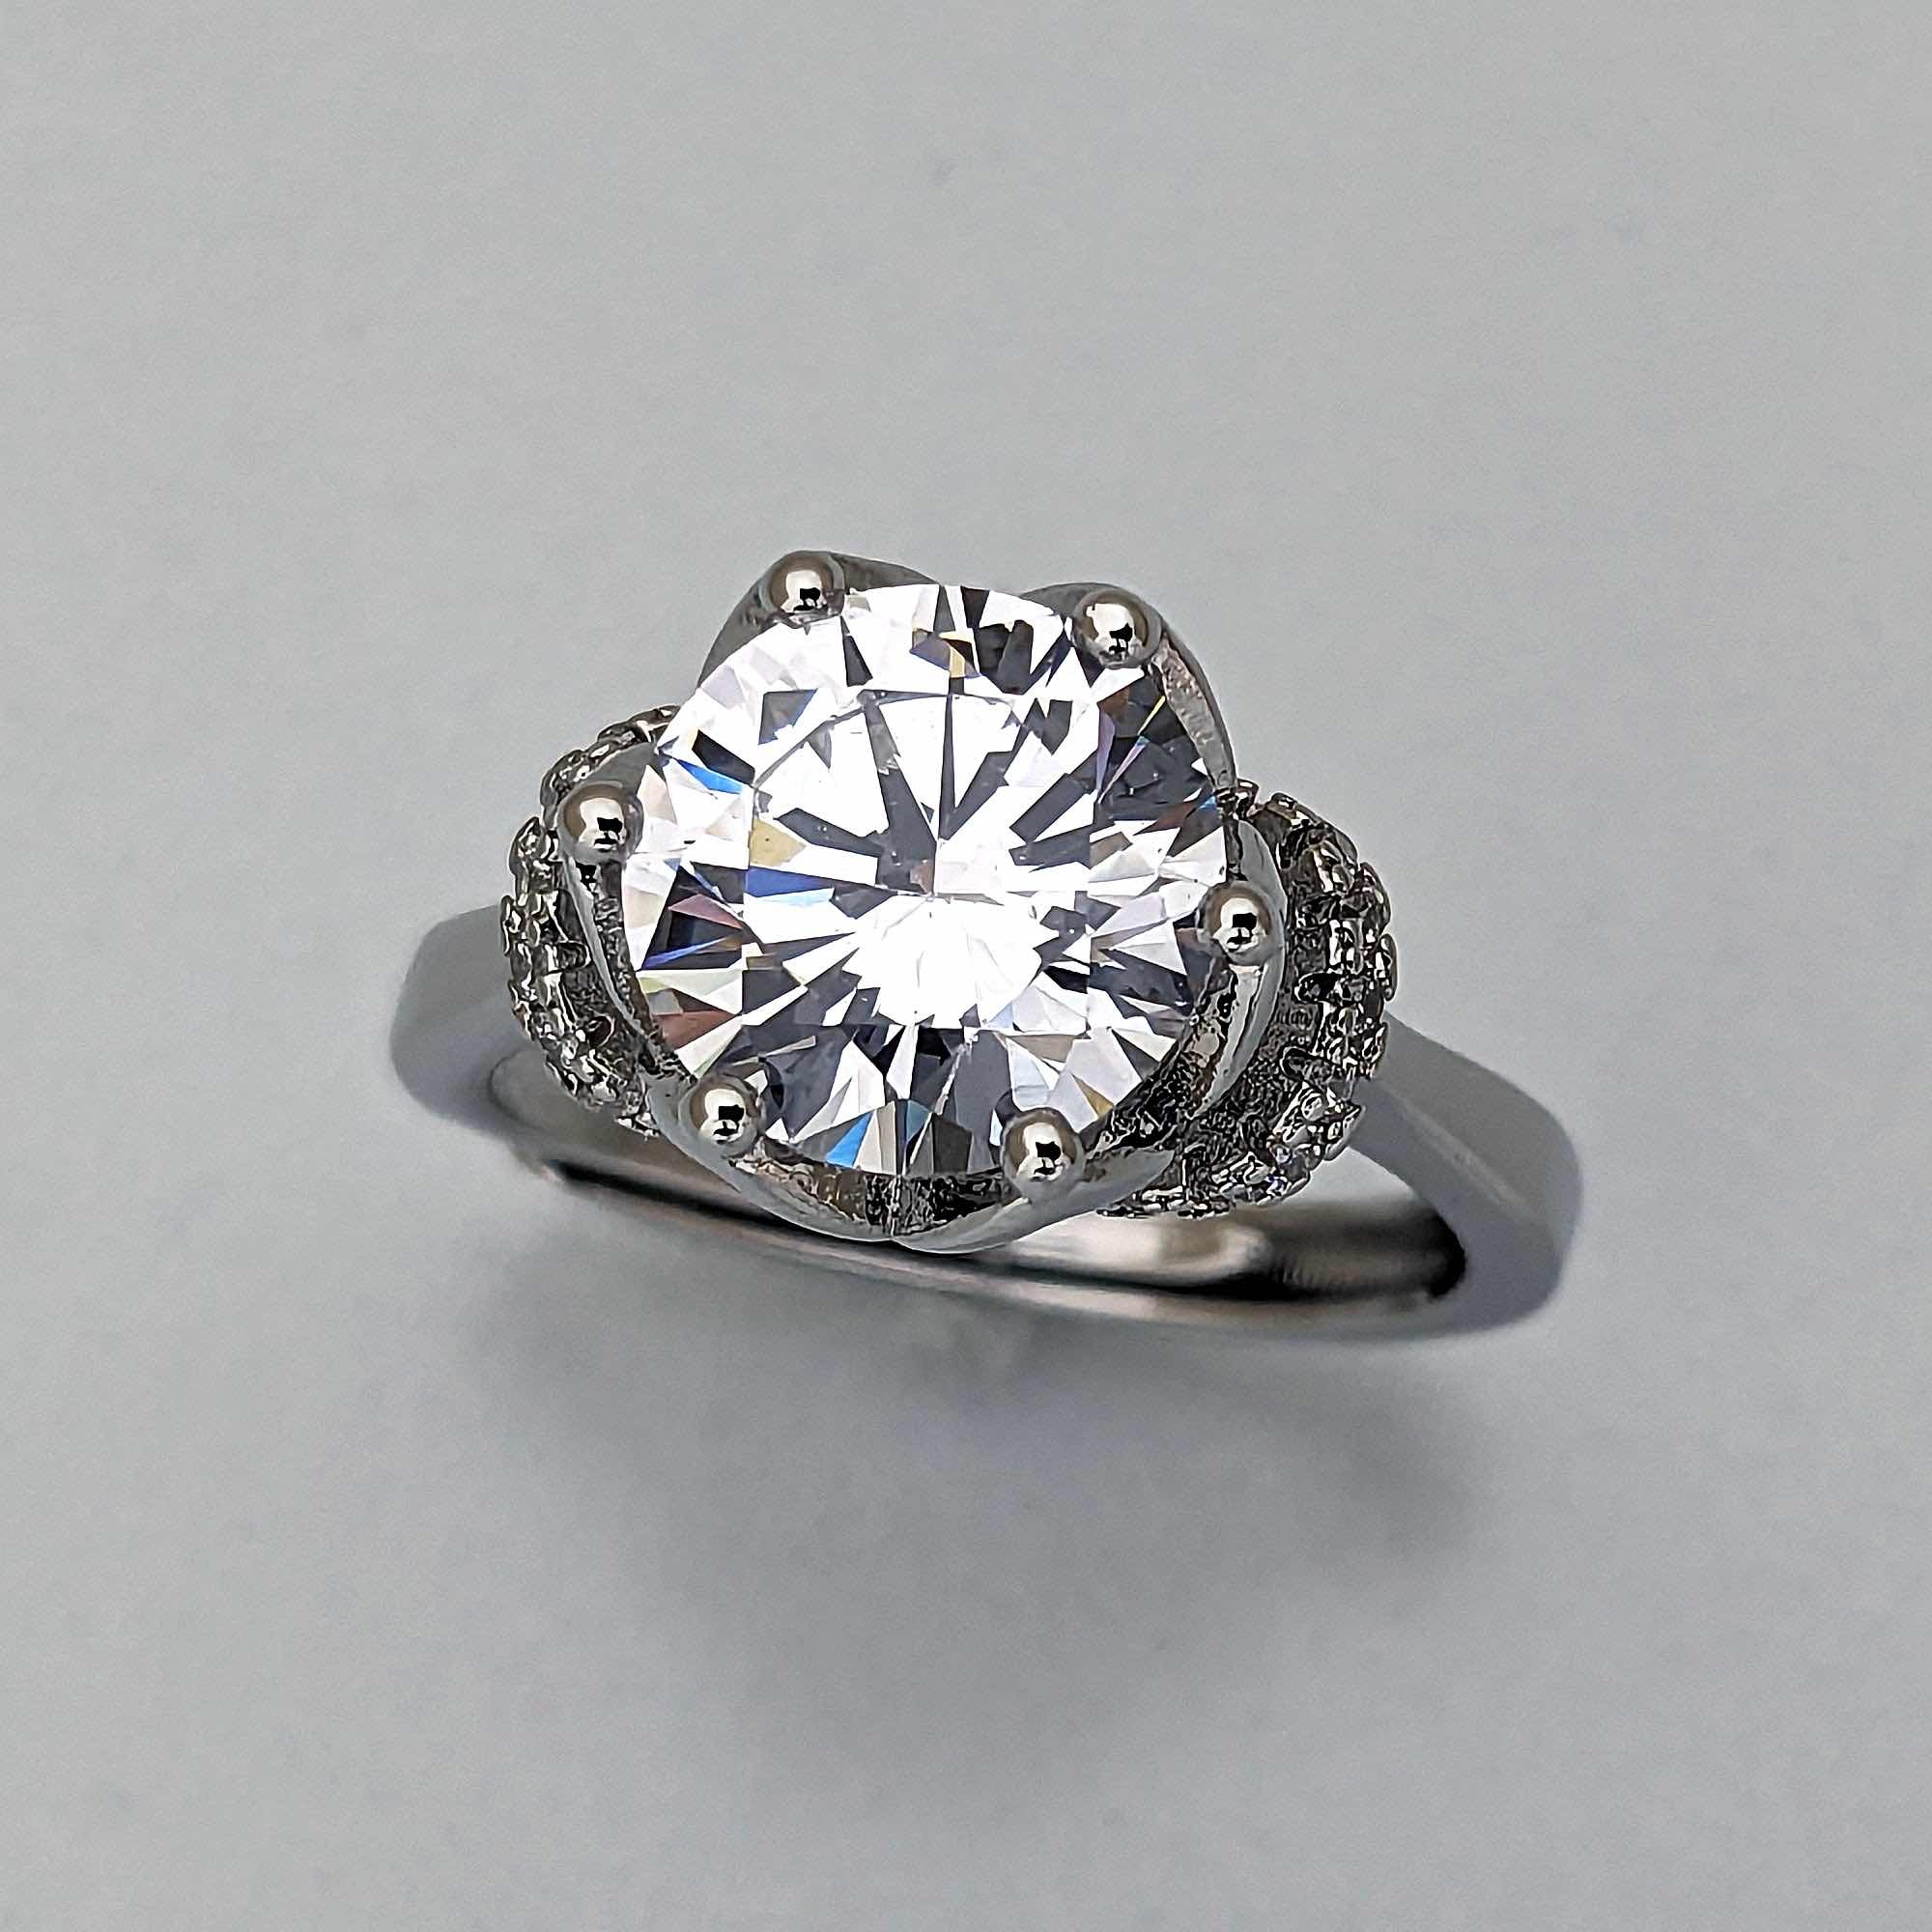 優雅で繊細なフラワーモチーフが大粒のダイヤモンドを優しく支える、特別な婚約指輪